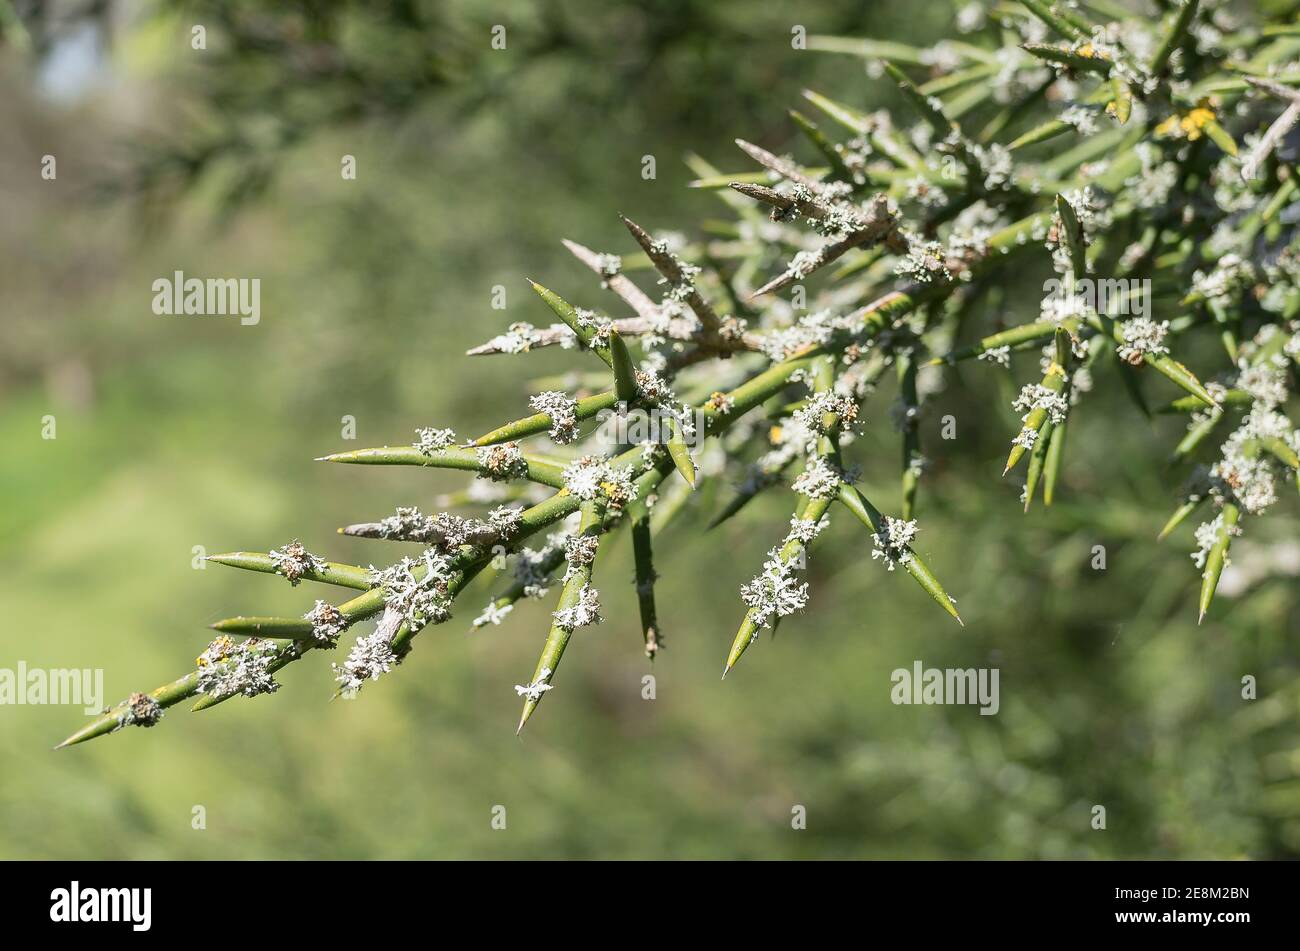 Ungewöhnlicher stacheliger Strauch Colletia Hysterix Rosea mit zylindrischen Dornen Mit Flechten bedeckt, die die Luftreinheit in einem englischen Garten anzeigen Stockfoto